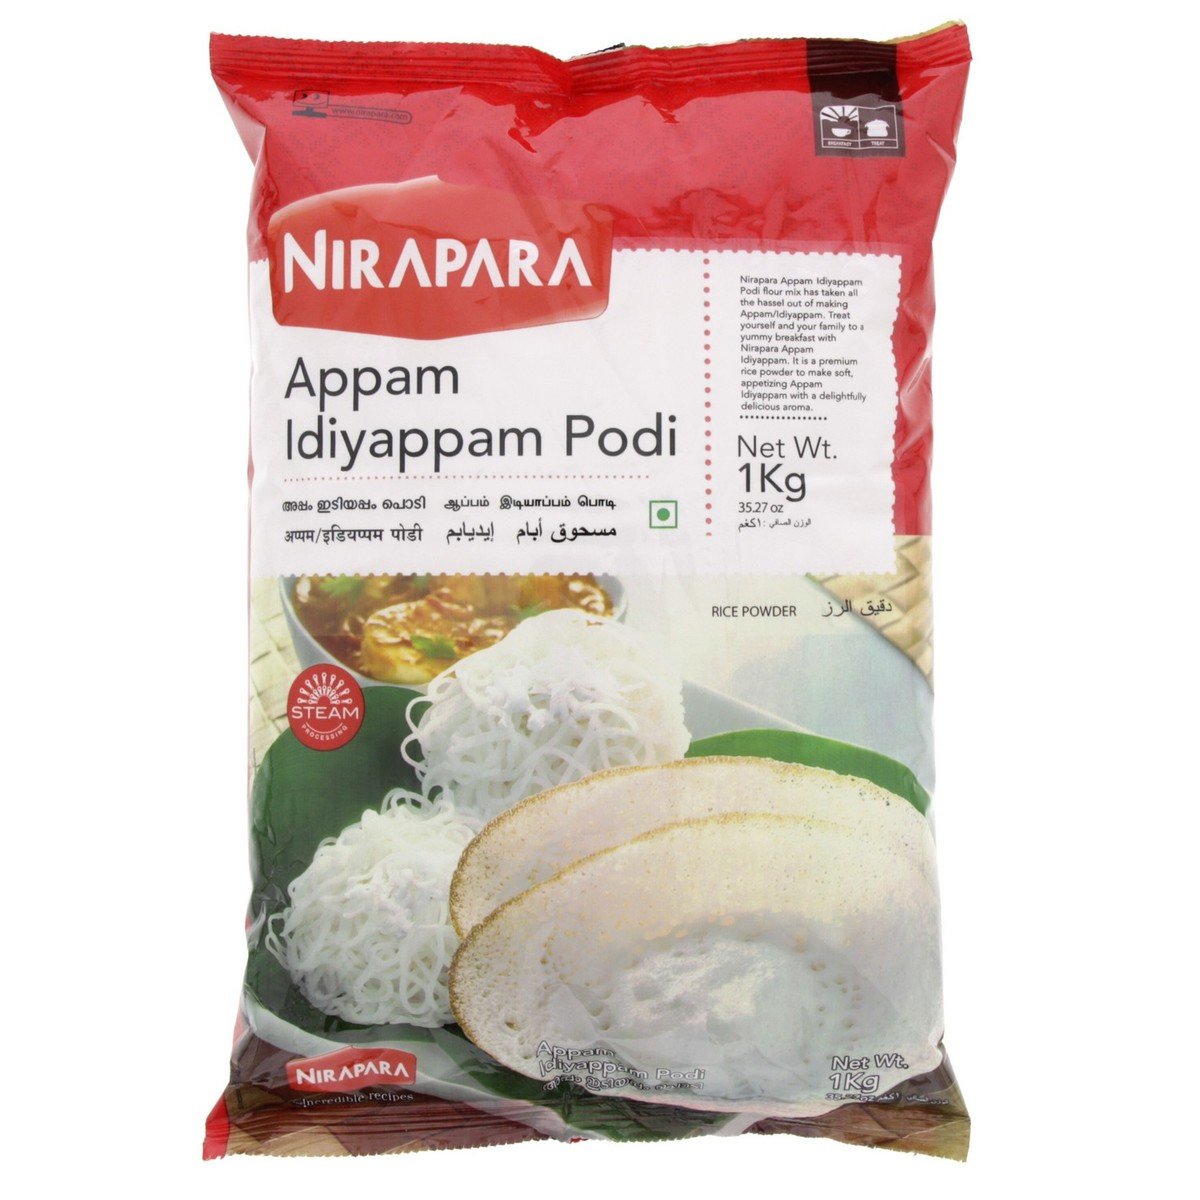 Nirapara Appam/Idiyappam Podi 1 kg